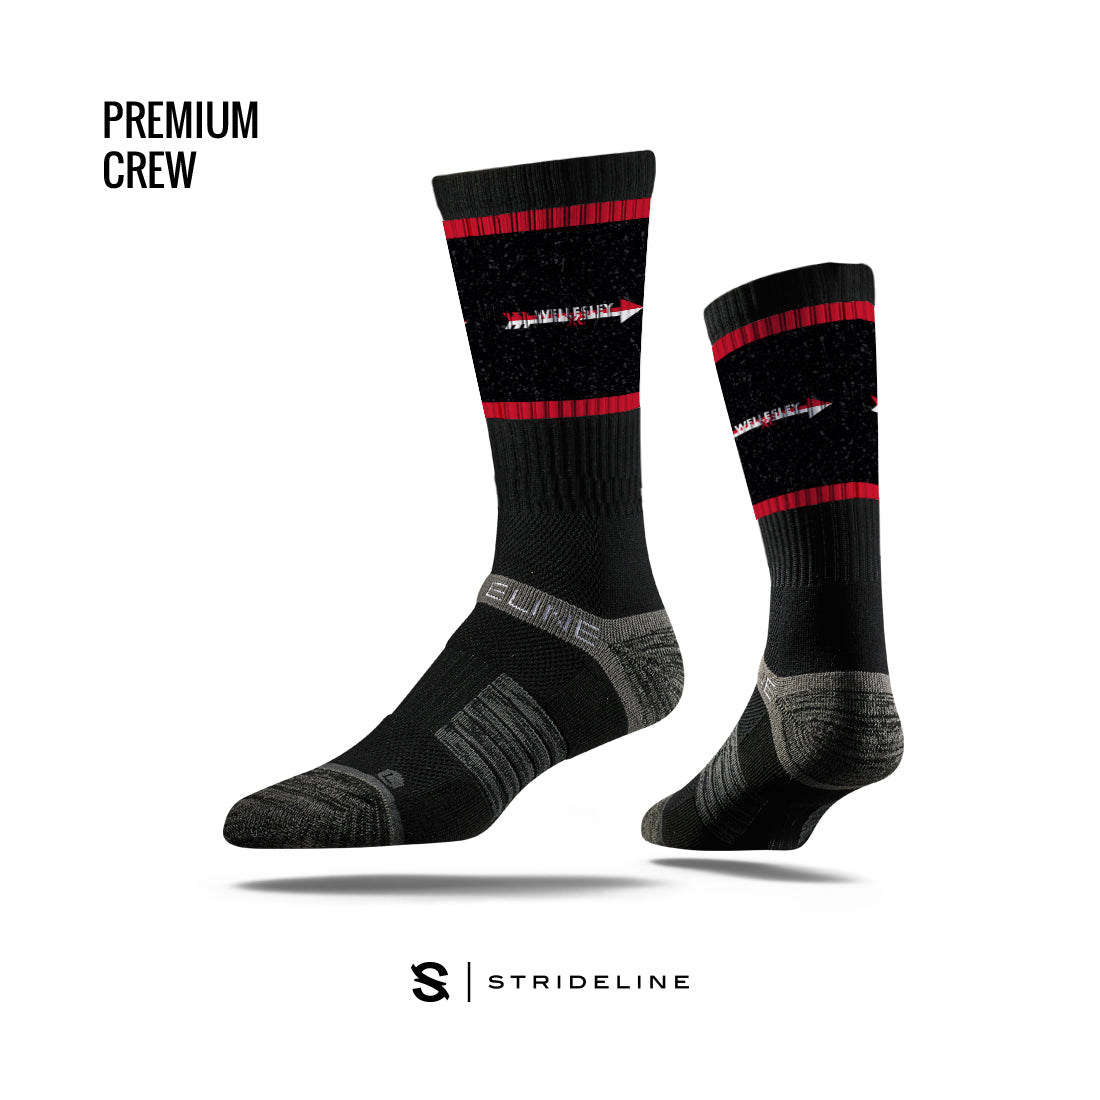 WHS XC – Strideline Premium Crew Socks